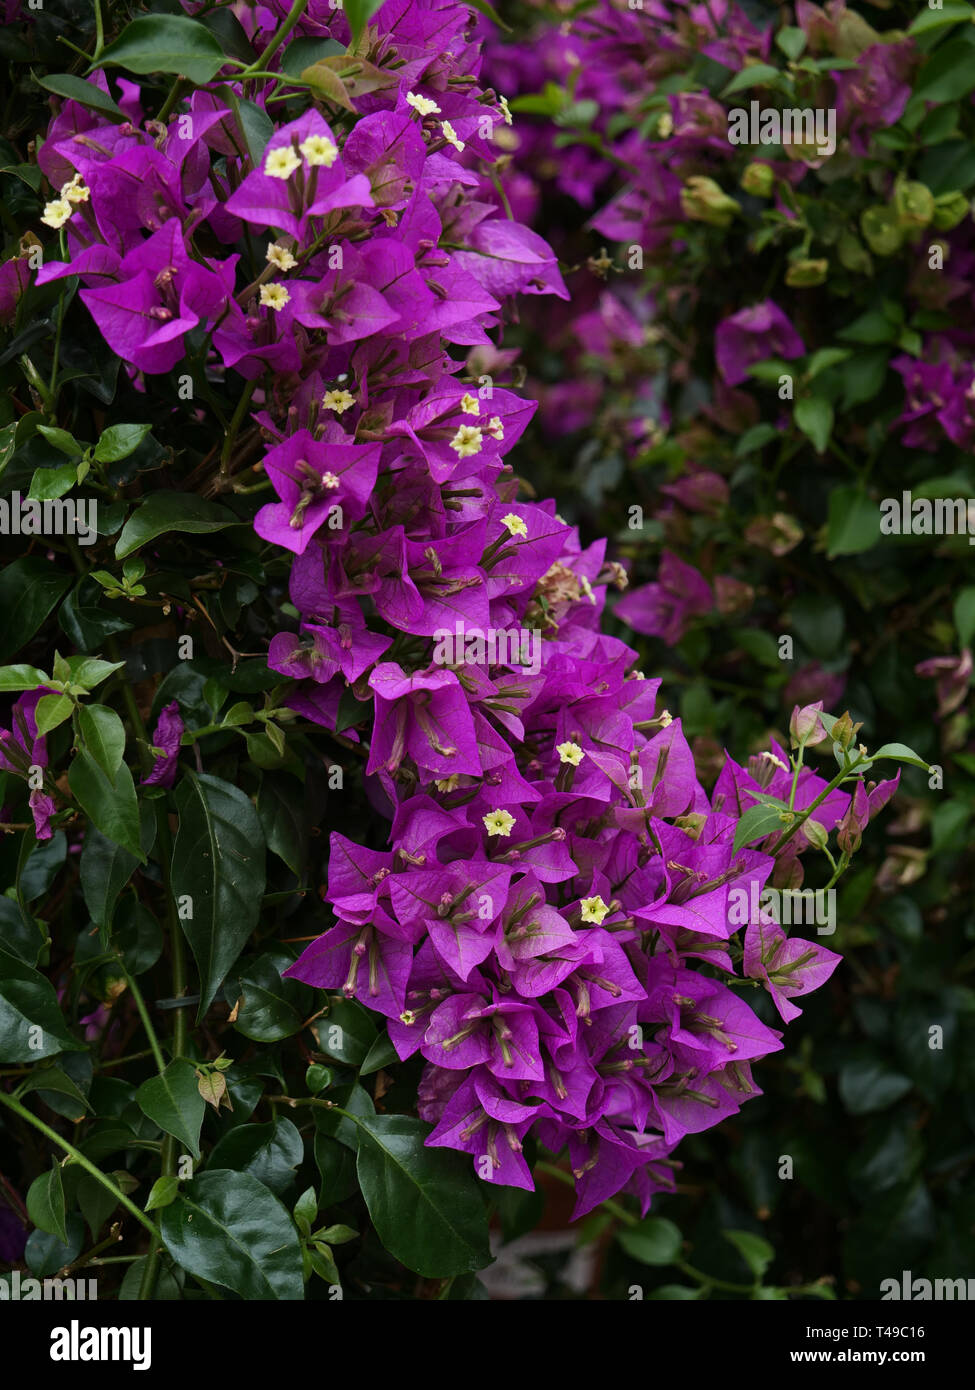 Massen von lila Blumen auf diese beiden Bourgainvillea Garten Pflanzen im Frühling, lange blühenden Garten. Stockfoto